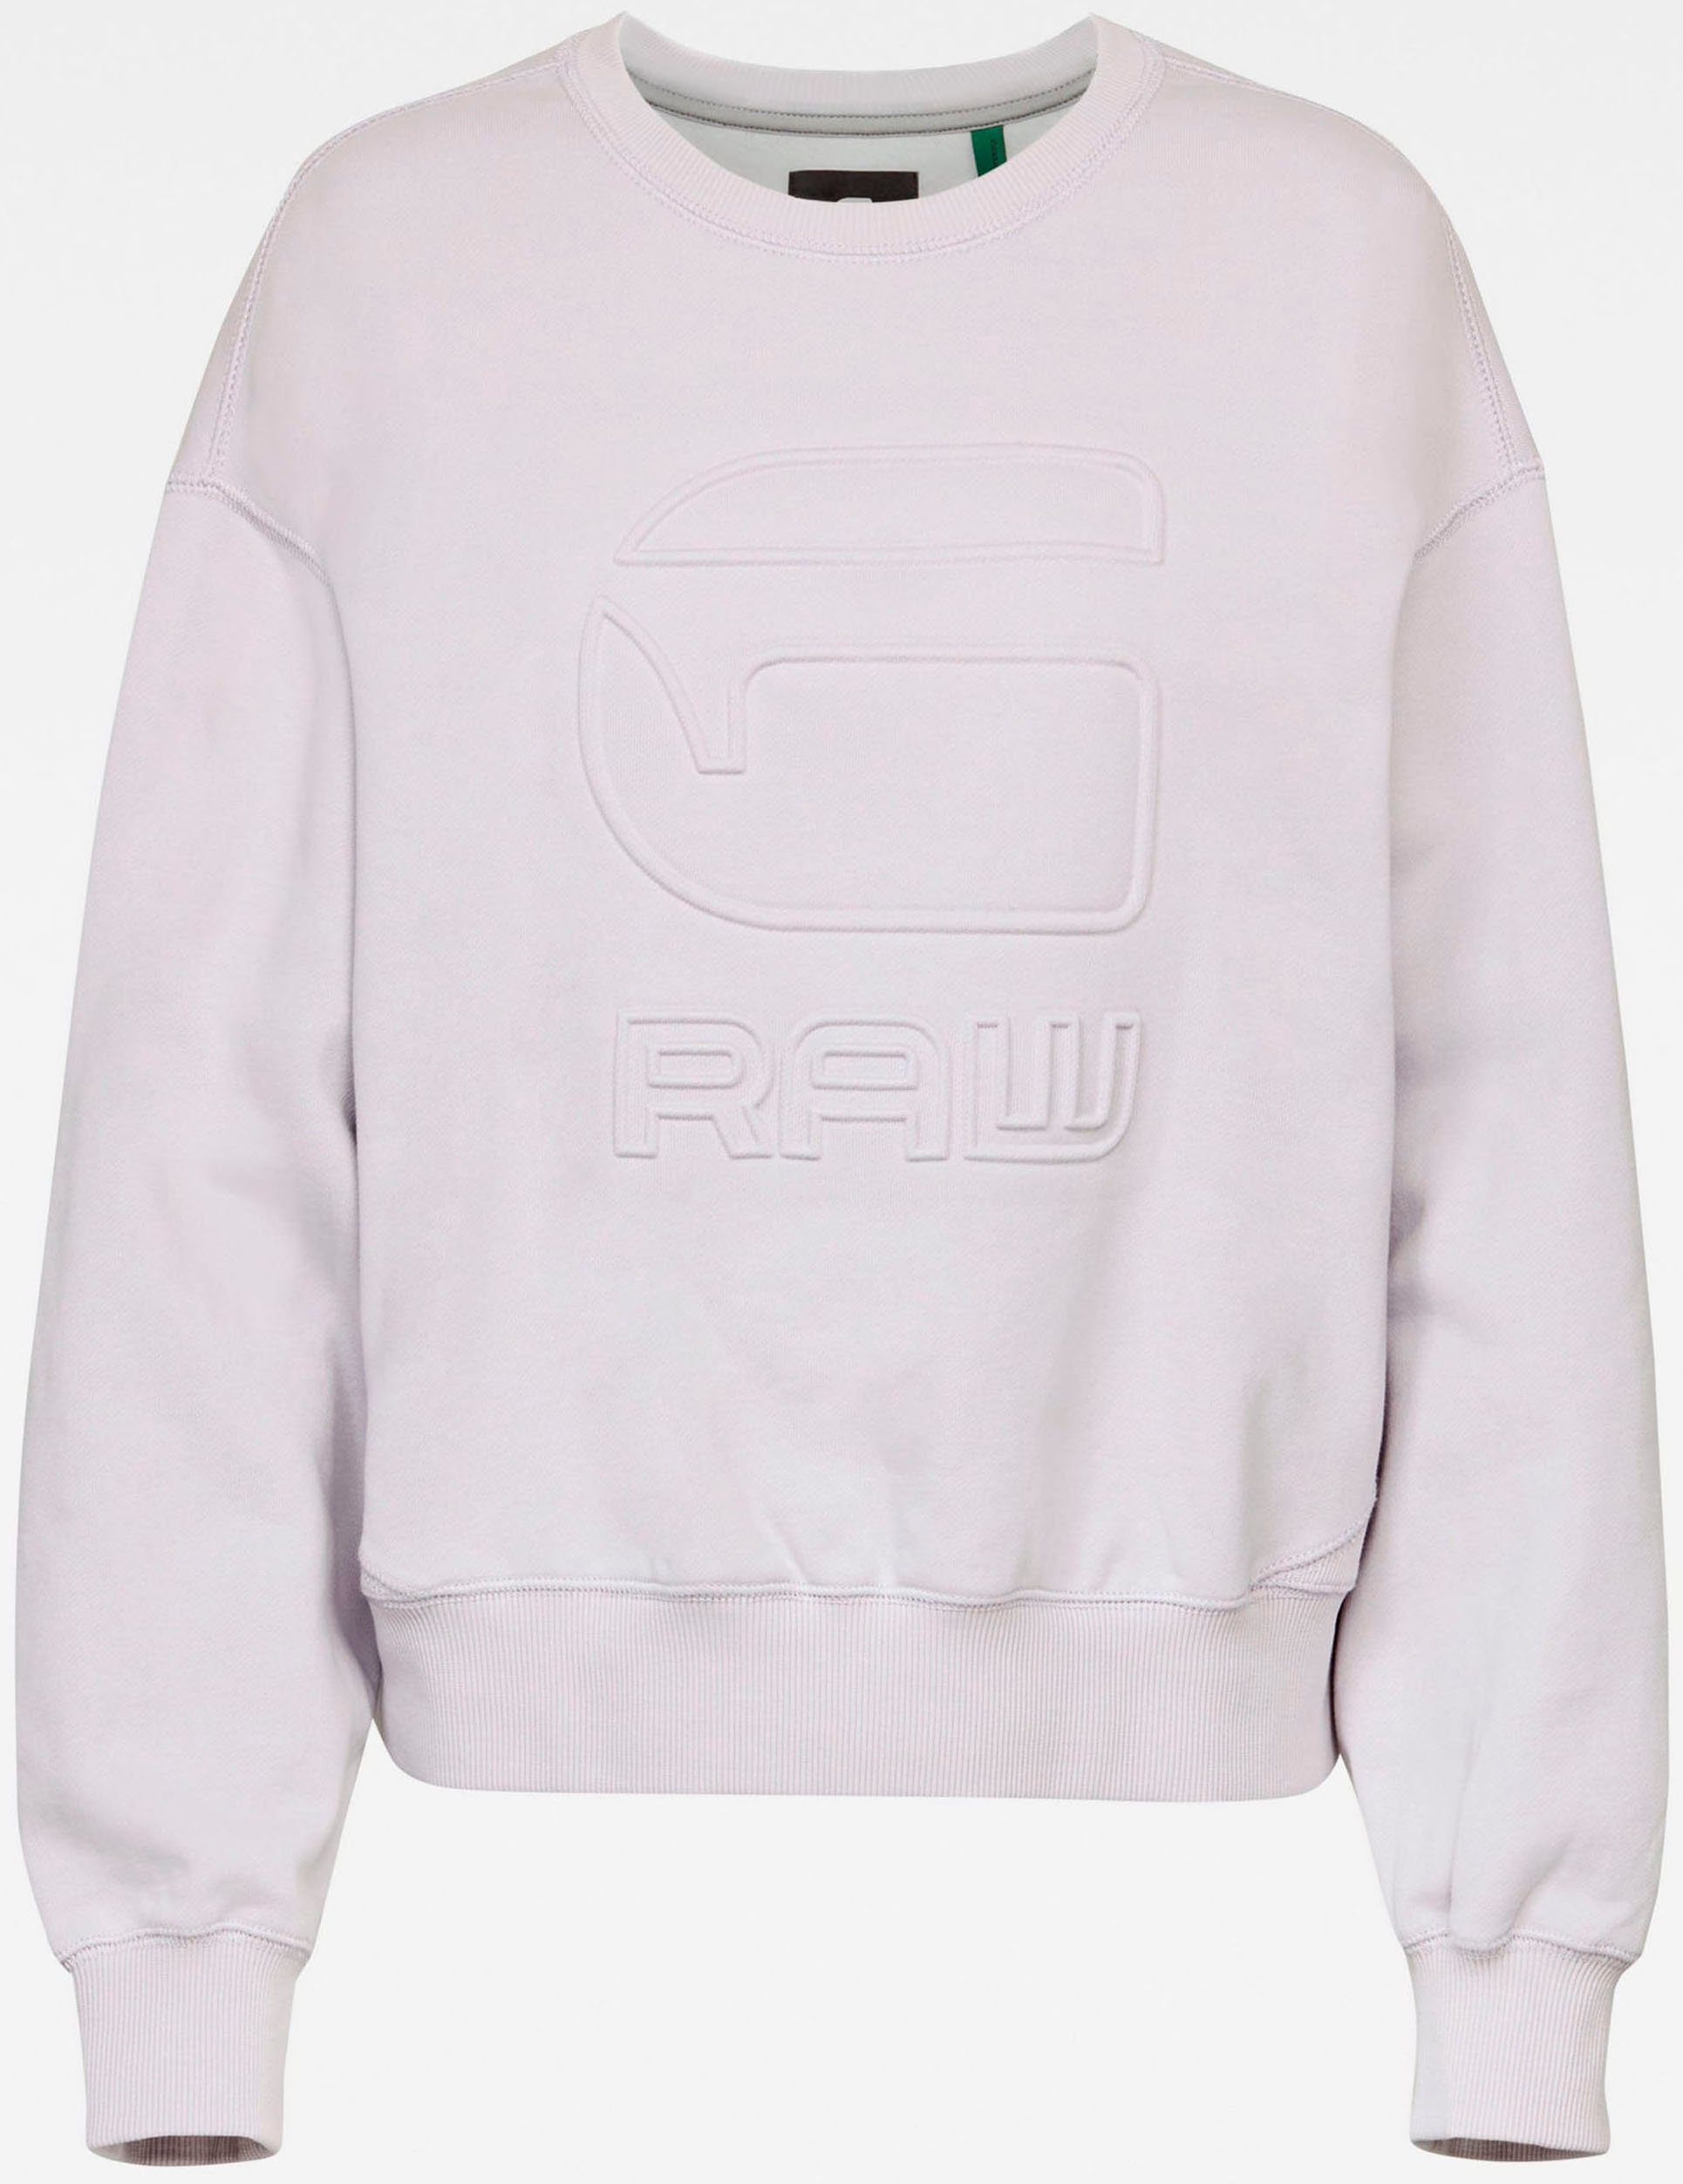 Damen Pullover G-Star RAW Sweatshirt Loose Sweatshirt mit geprägten G-Star RAW Logo vorne